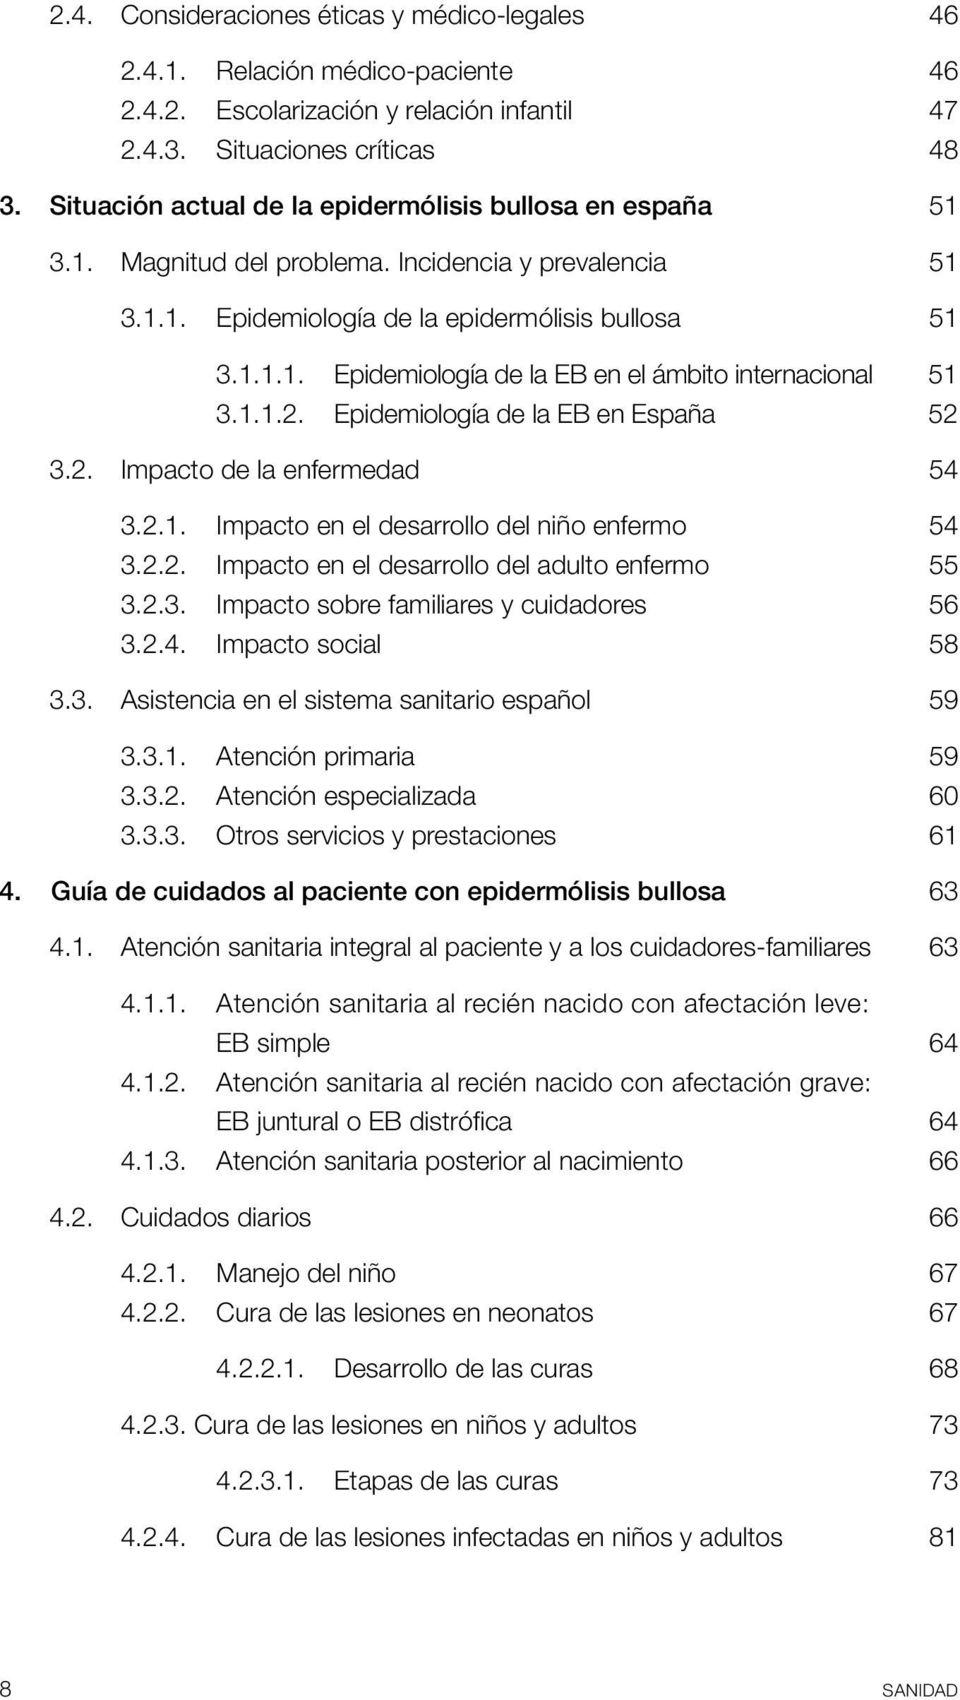 1.1.2. Epidemiología de la EB en España 52 3.2. Impacto de la enfermedad 54 3.2.1. Impacto en el desarrollo del niño enfermo 54 3.2.2. Impacto en el desarrollo del adulto enfermo 55 3.2.3. Impacto sobre familiares y cuidadores 56 3.